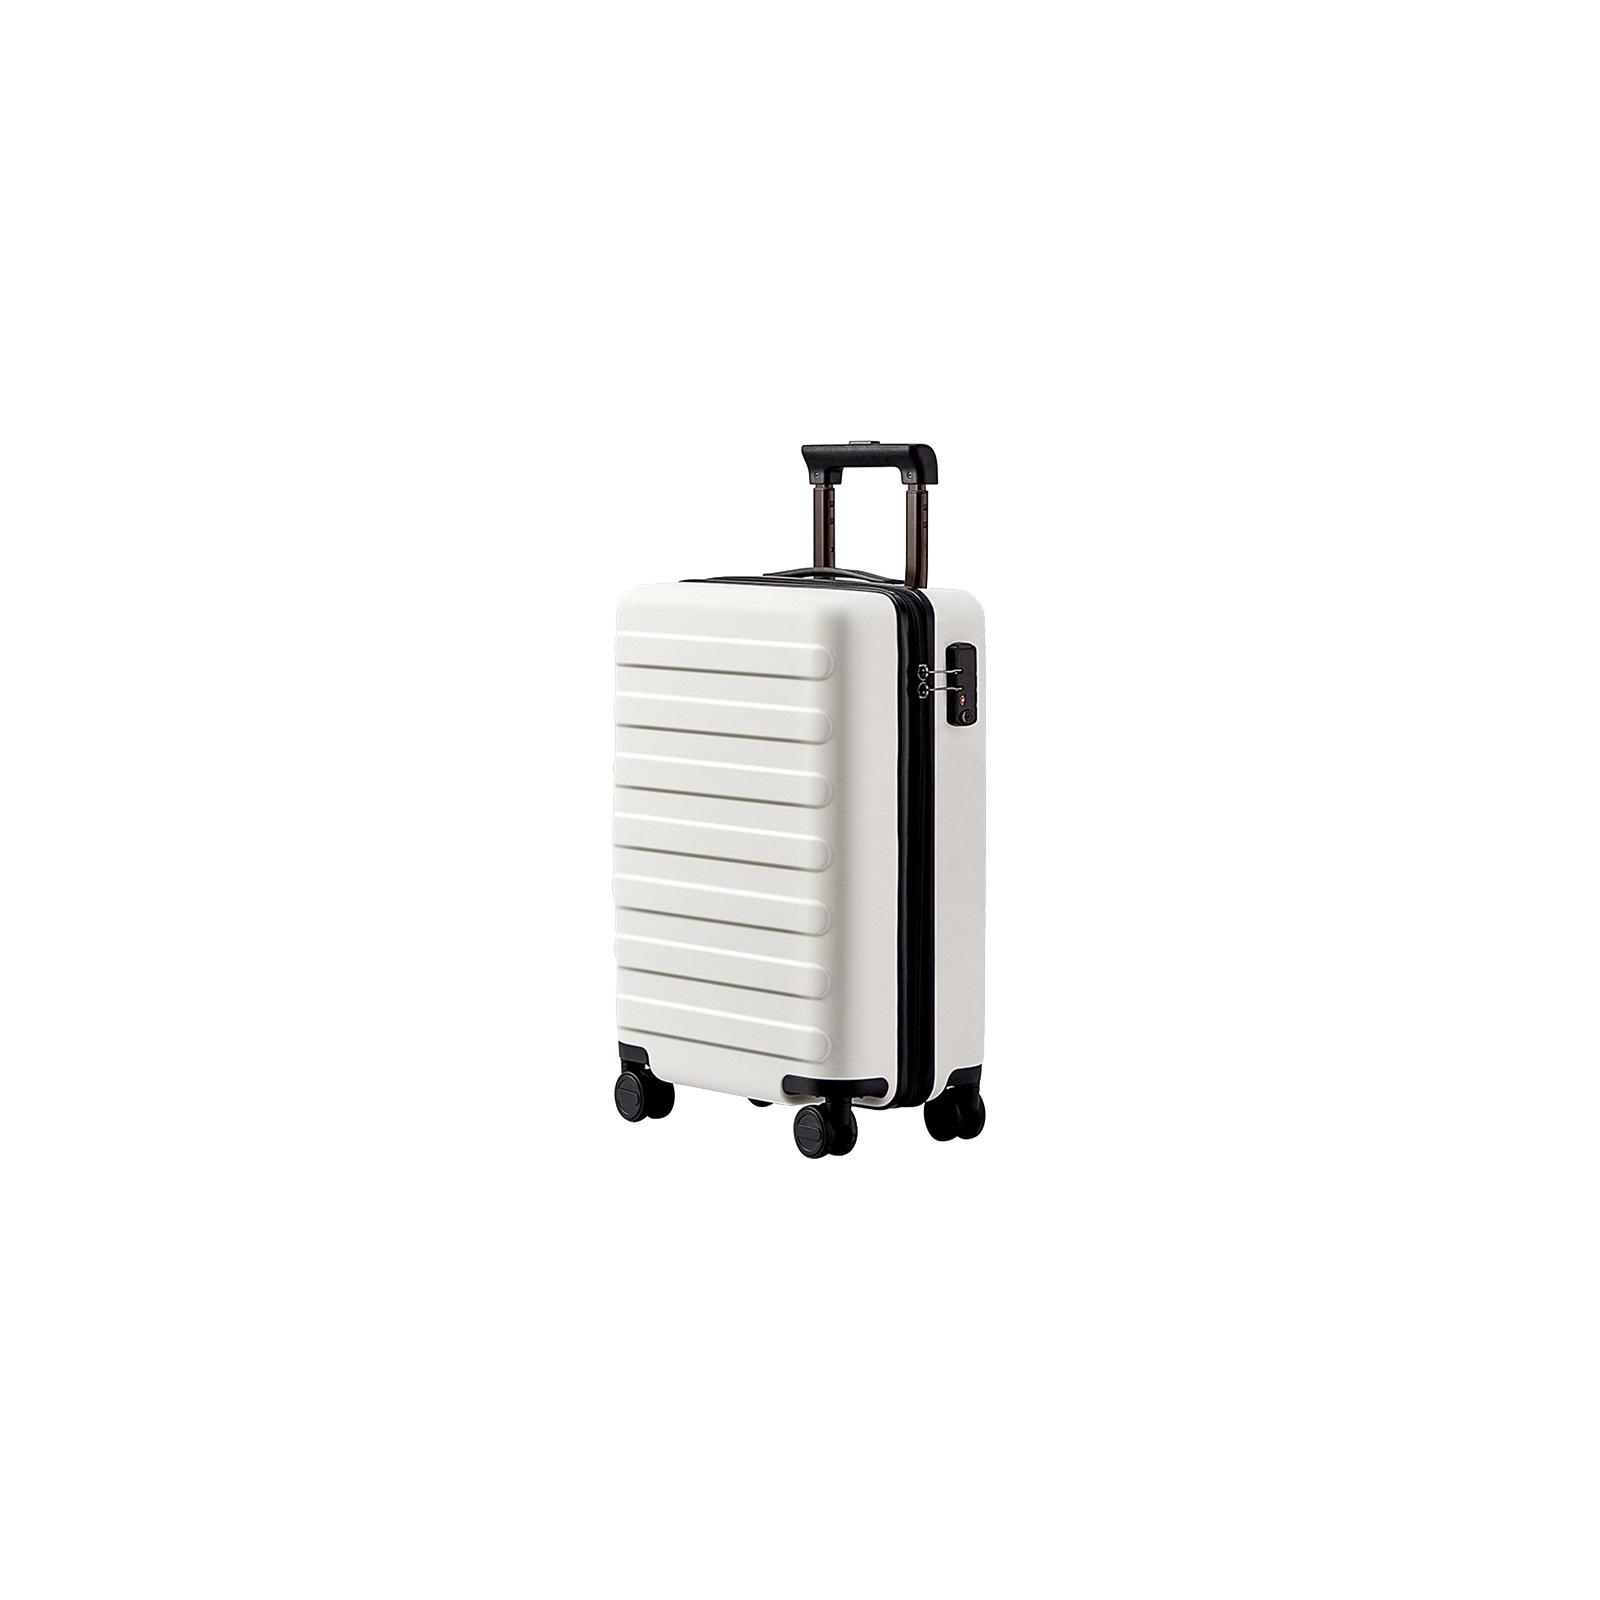 Чемодан Xiaomi Ninetygo Business Travel Luggage 28" Yellow (6970055346733)